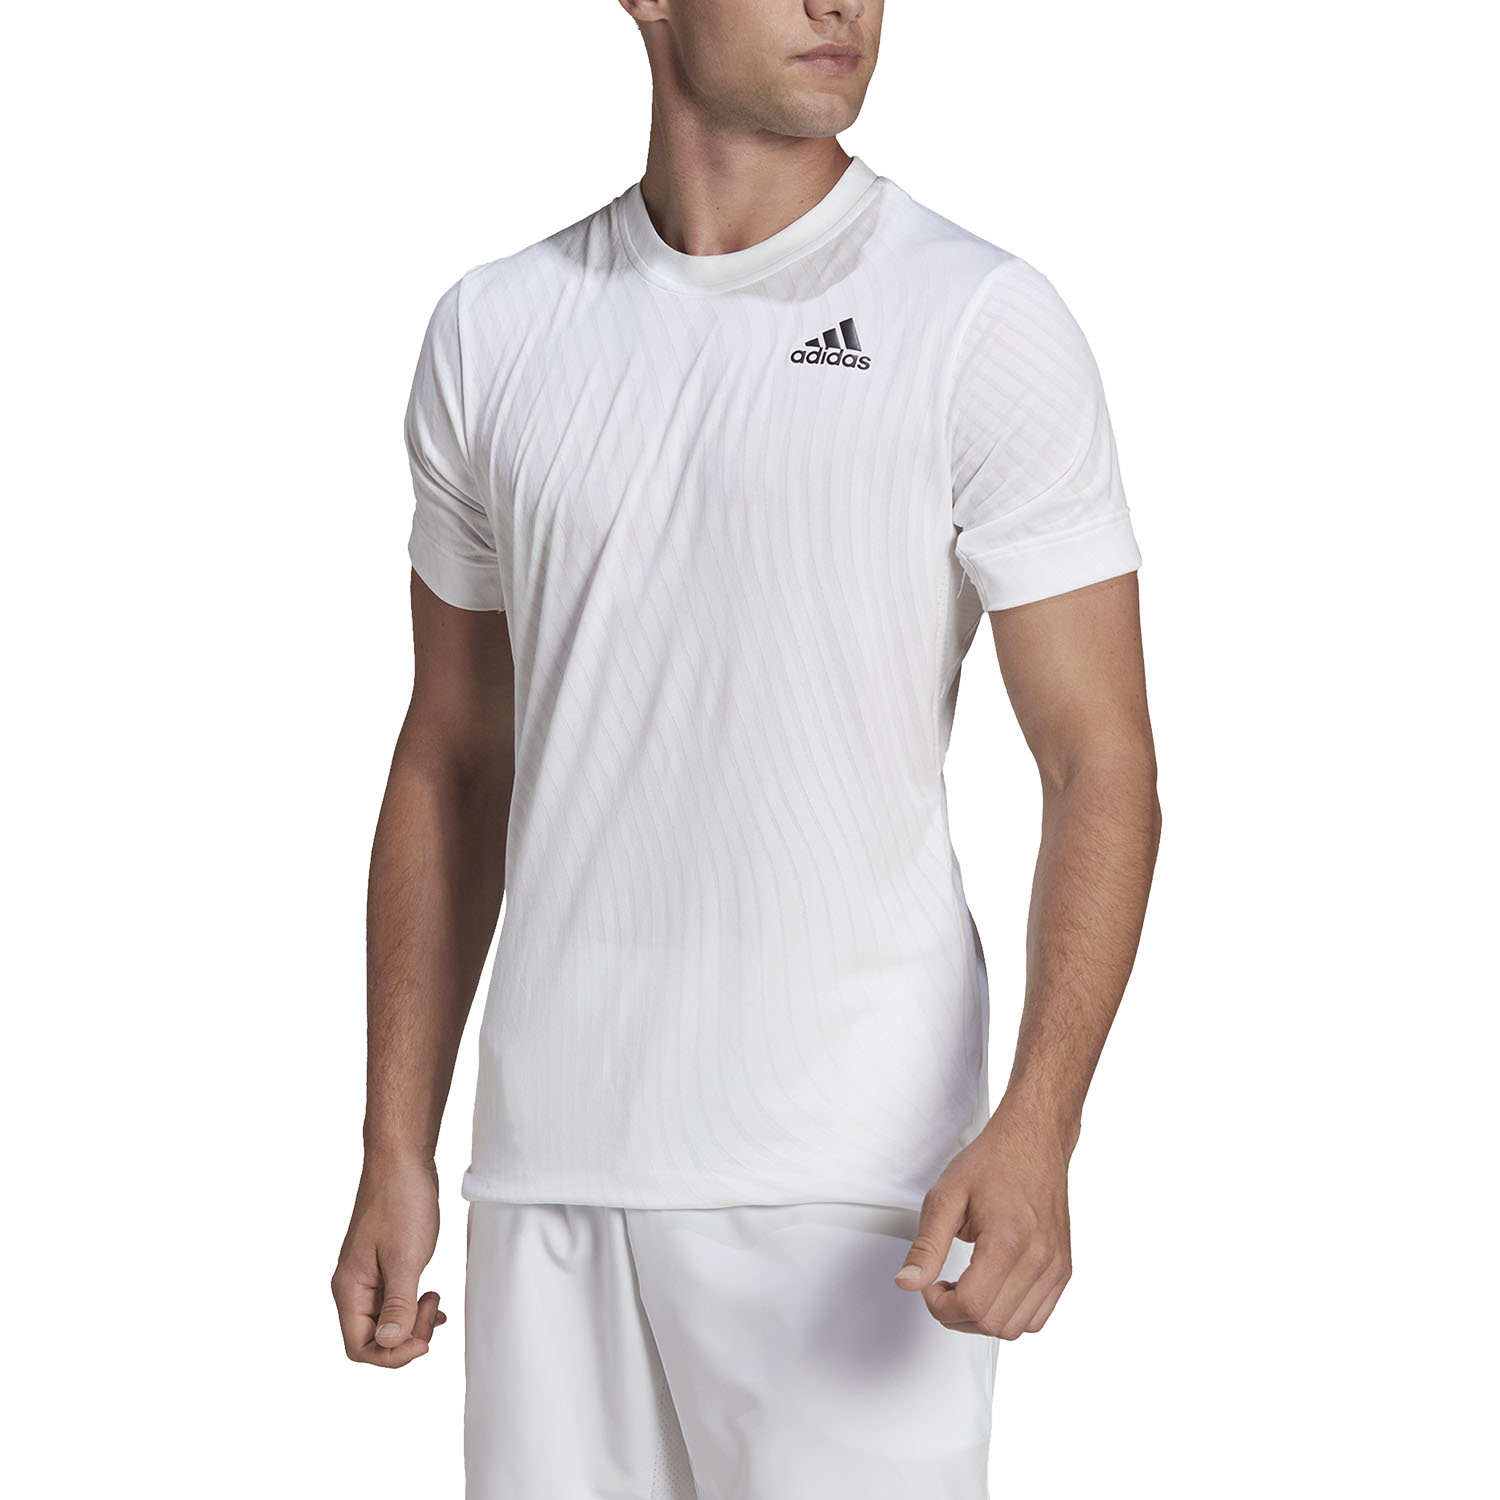 كريمسون adidas Freelift Court T-Shirt - White كريمسون